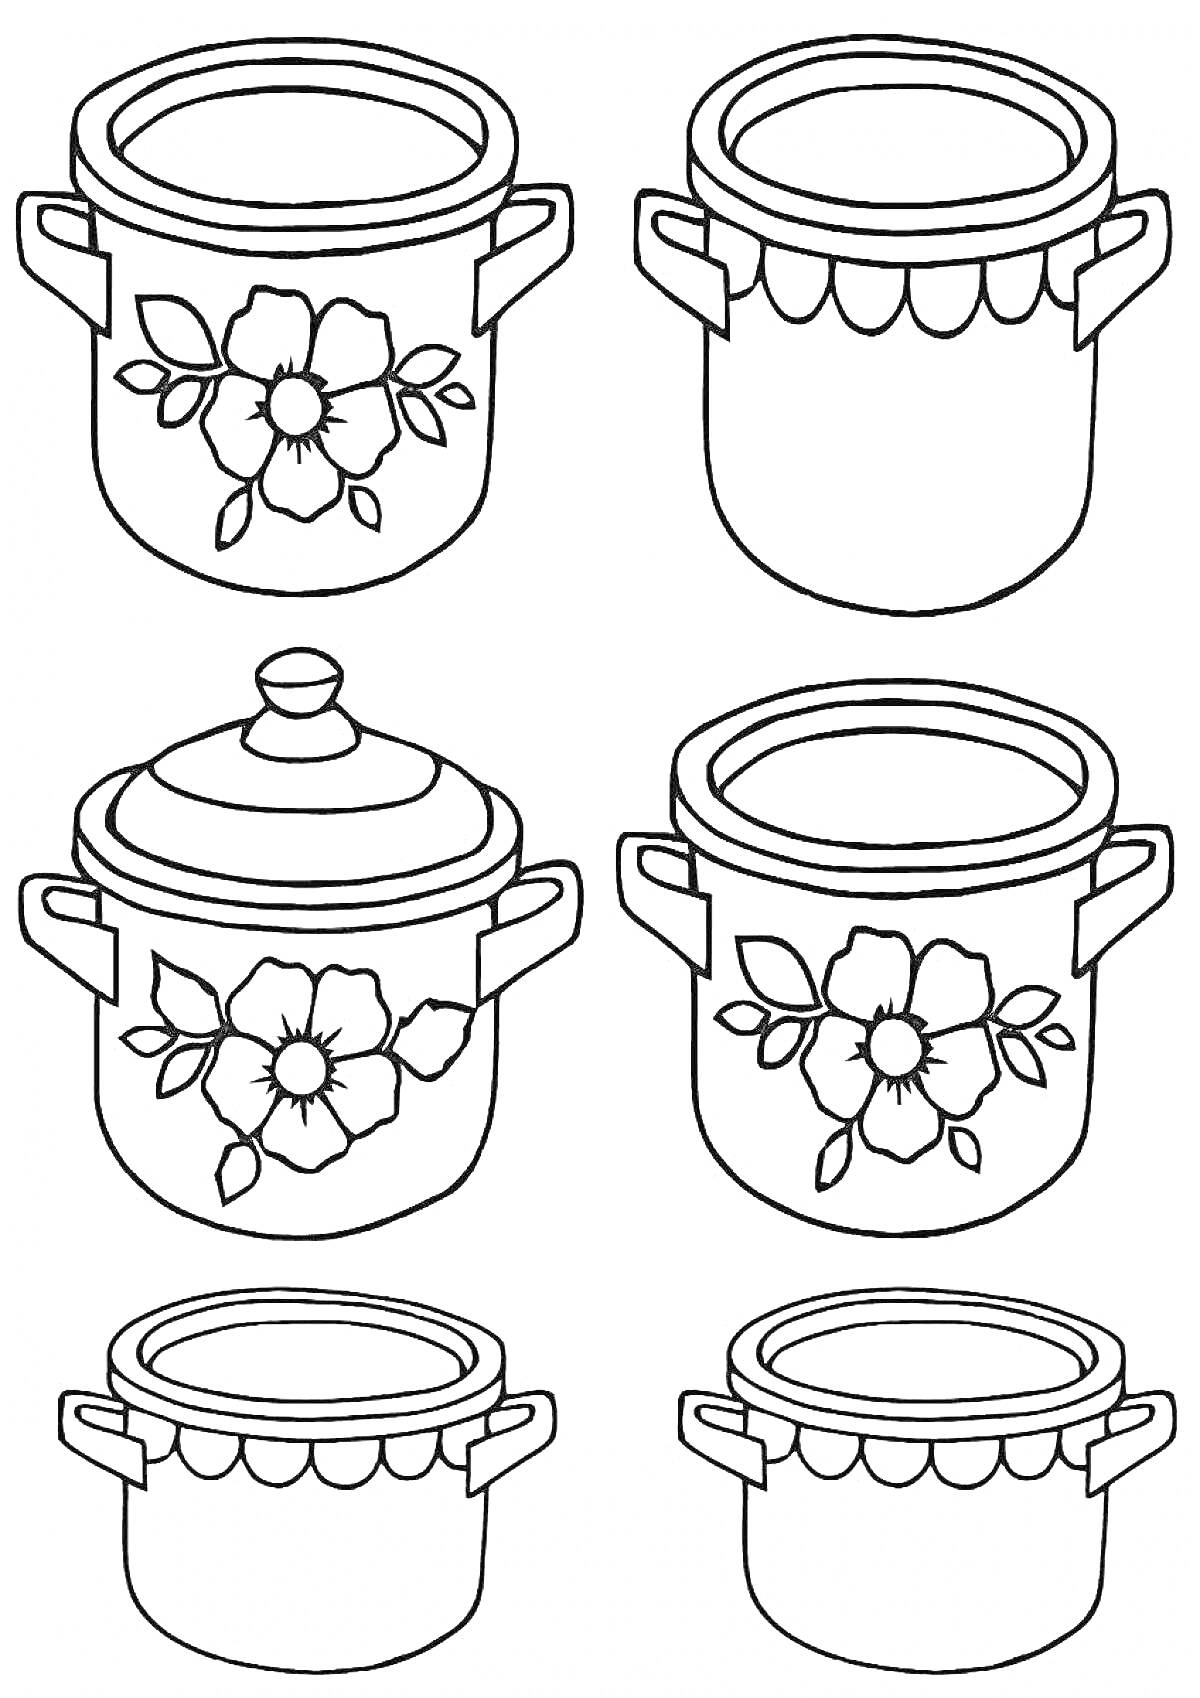 Раскраска Три кастрюли с цветочным узором и крышкой, три кастрюли без узора и крышки